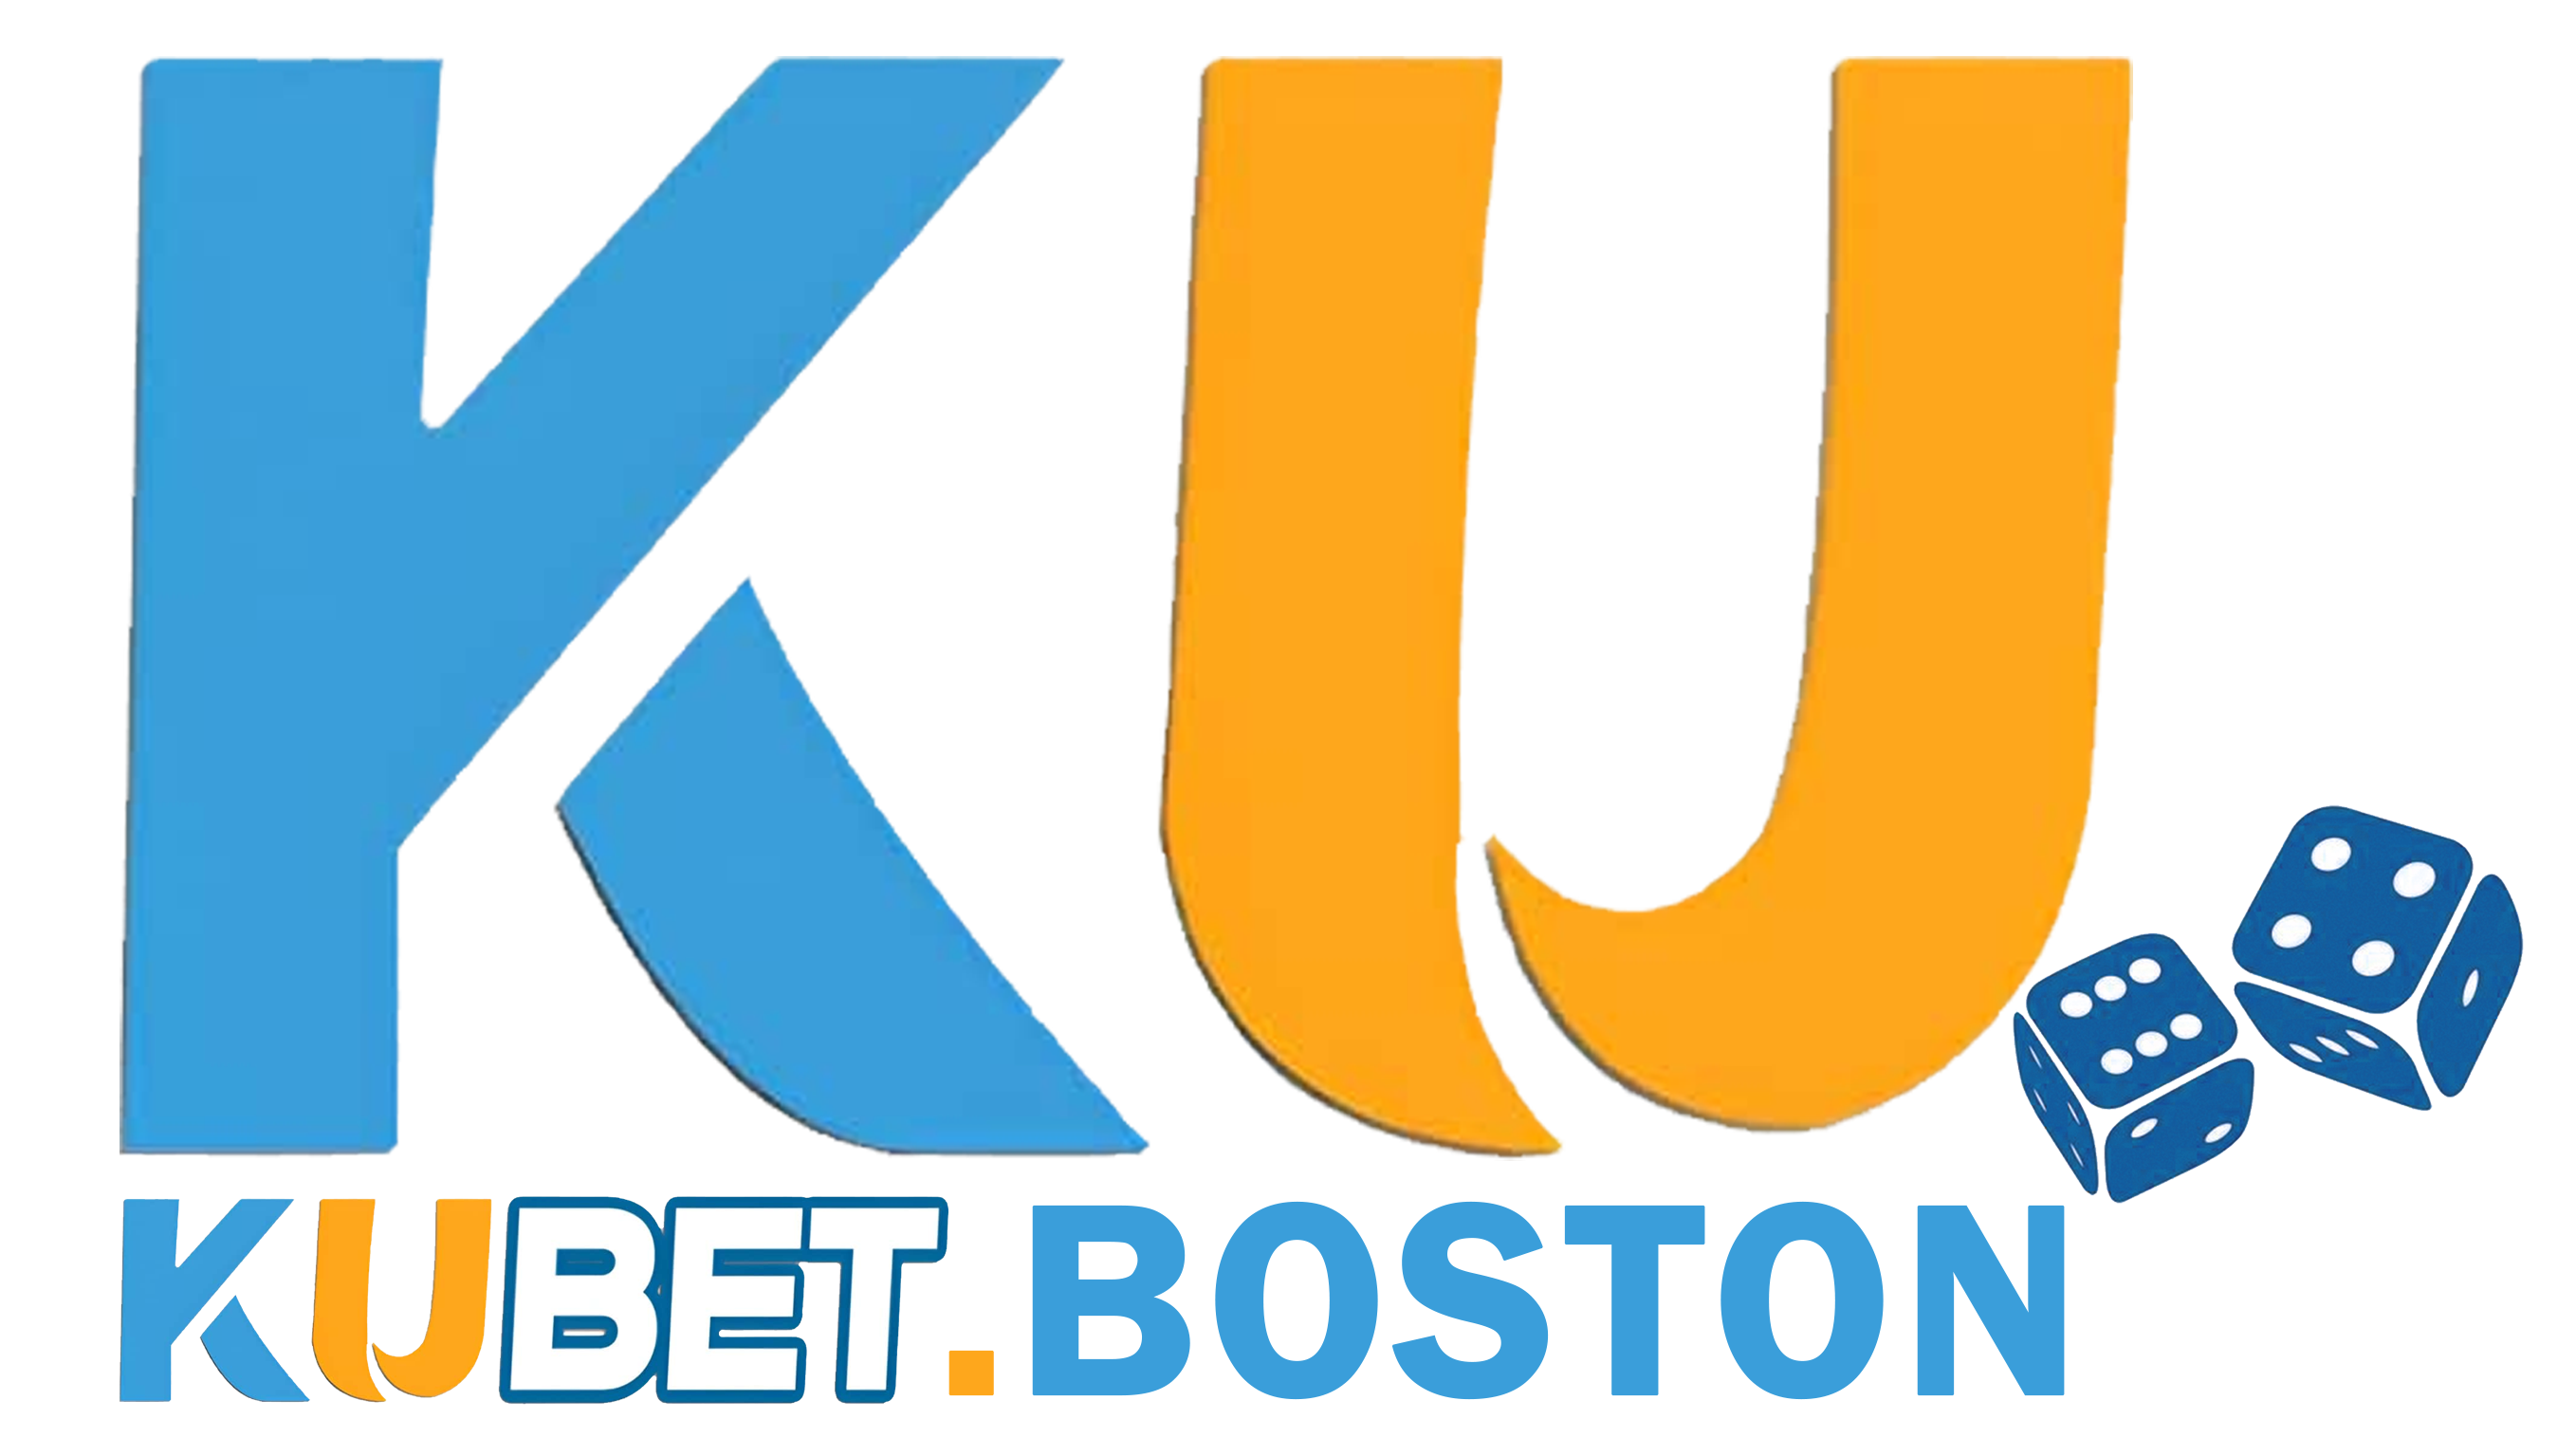 logo kubet